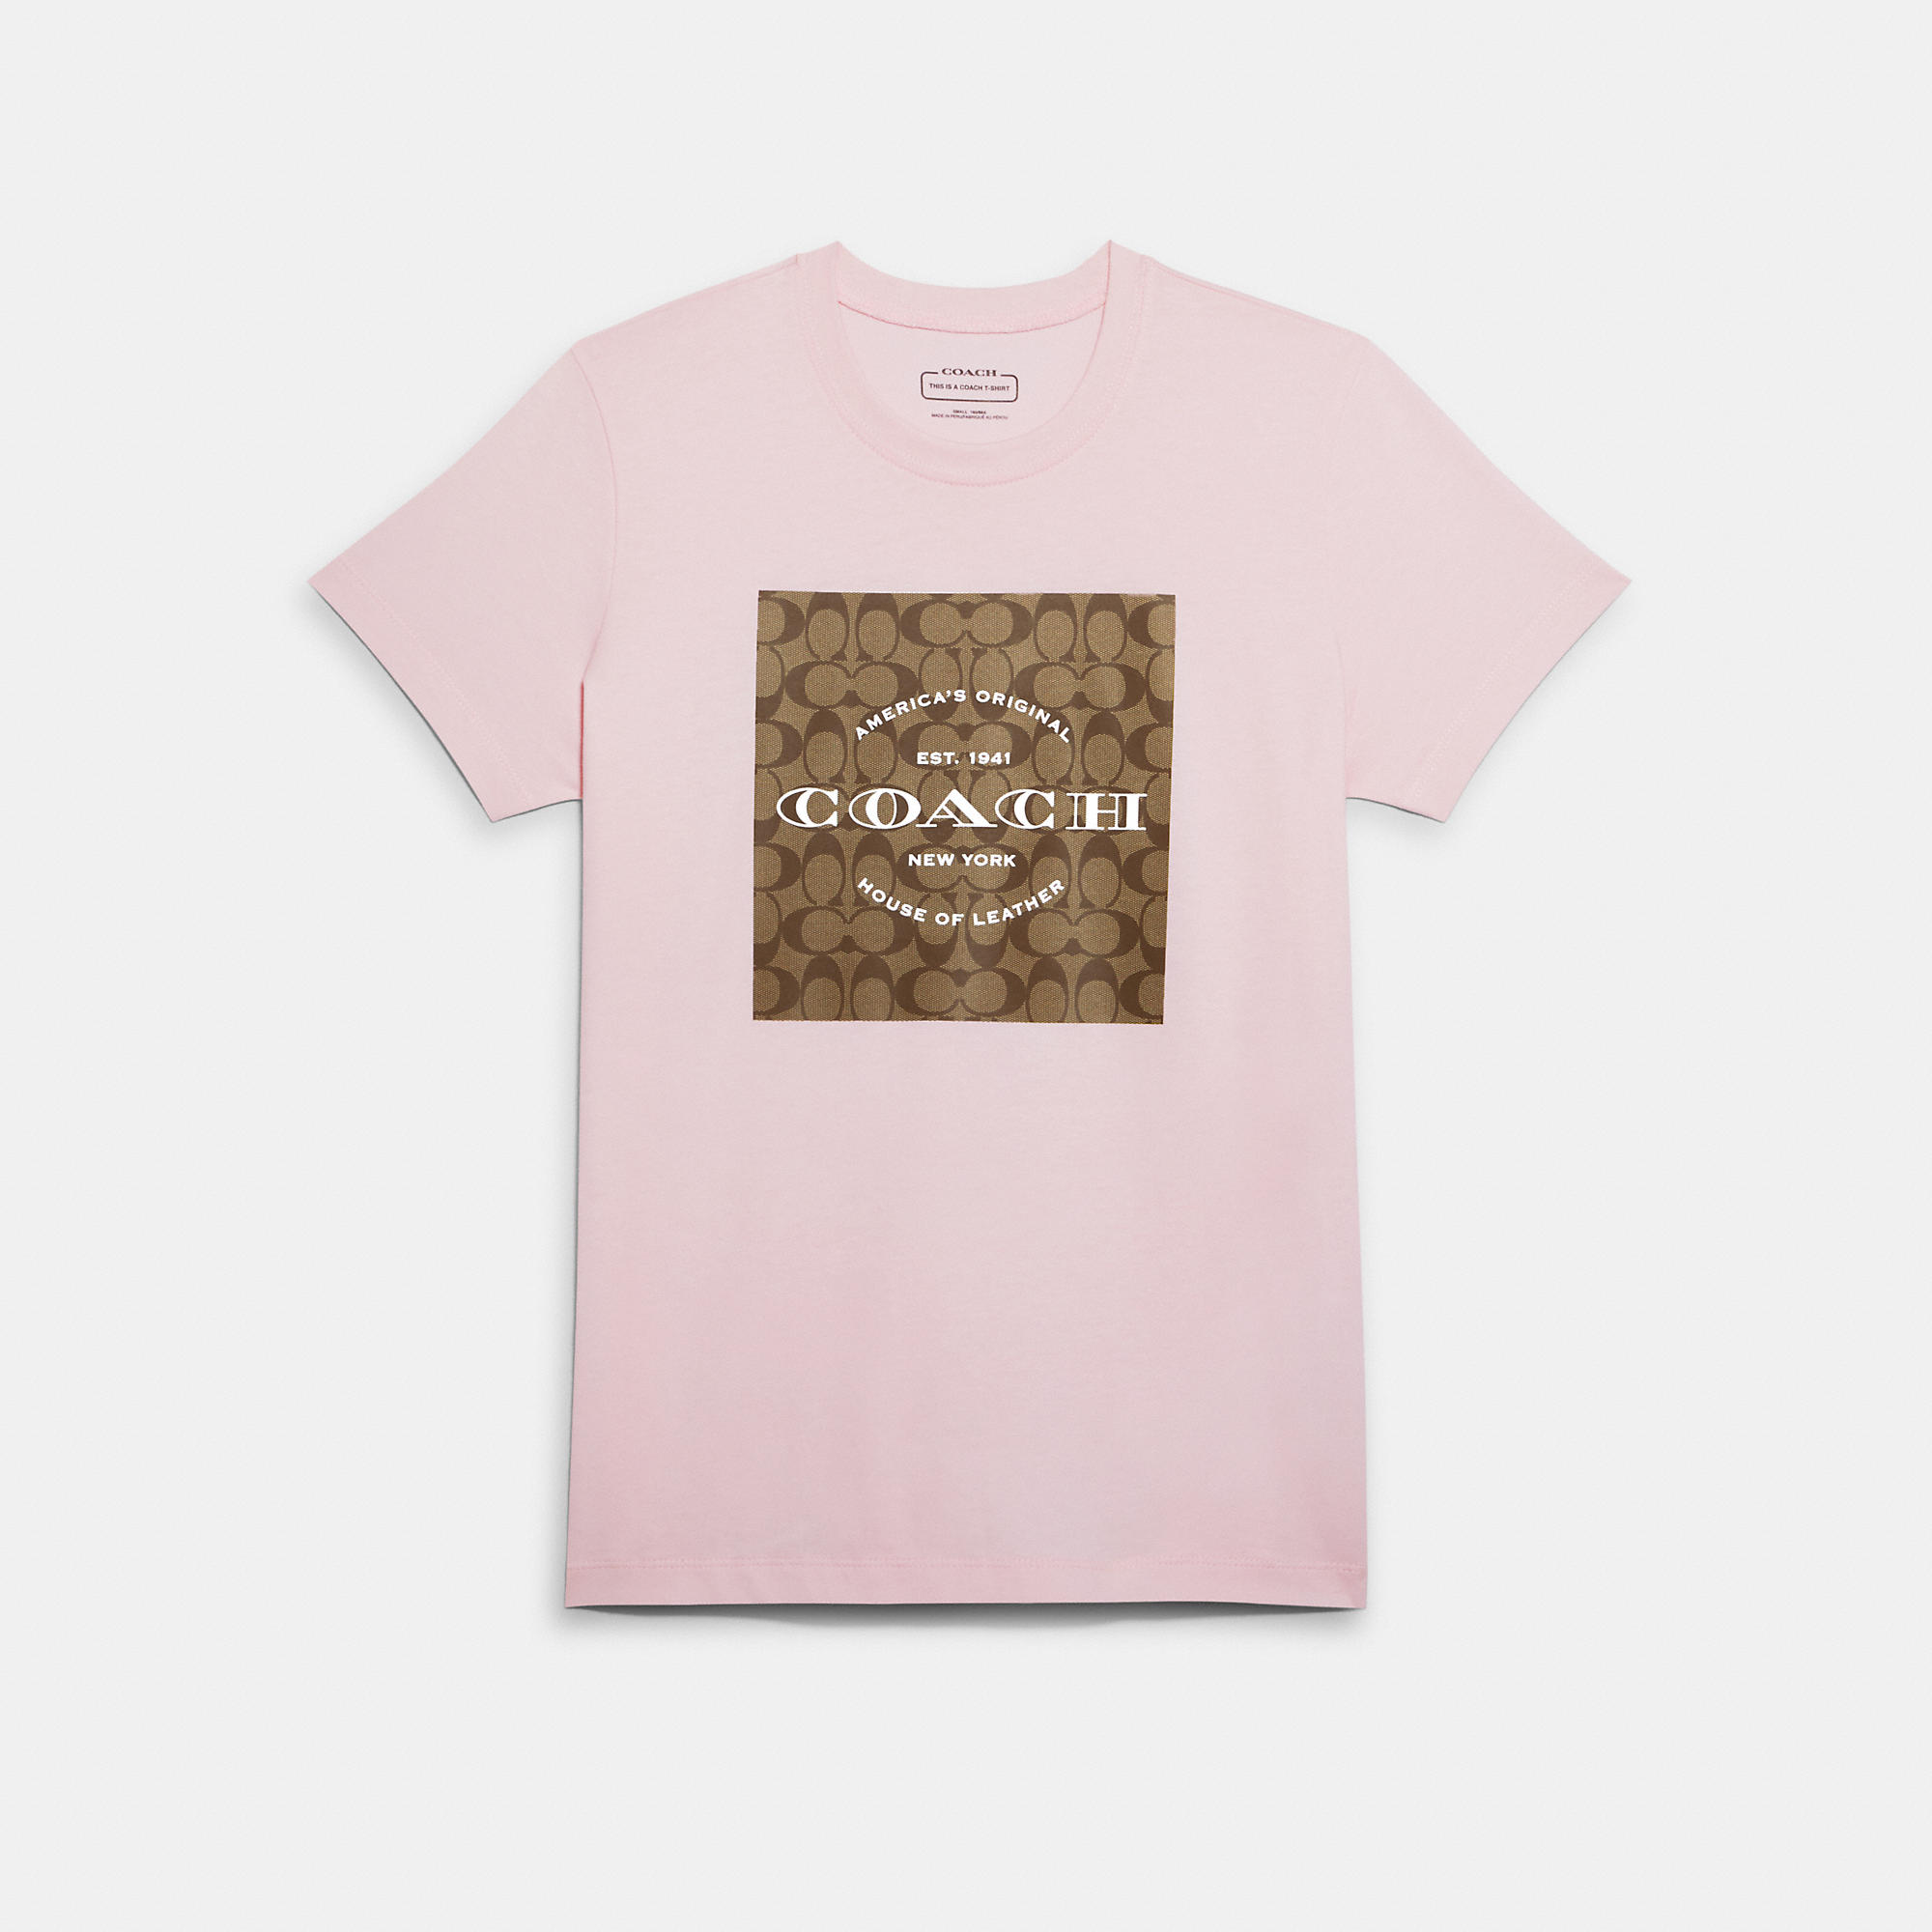 COACH T-Shirts for Women | ModeSens